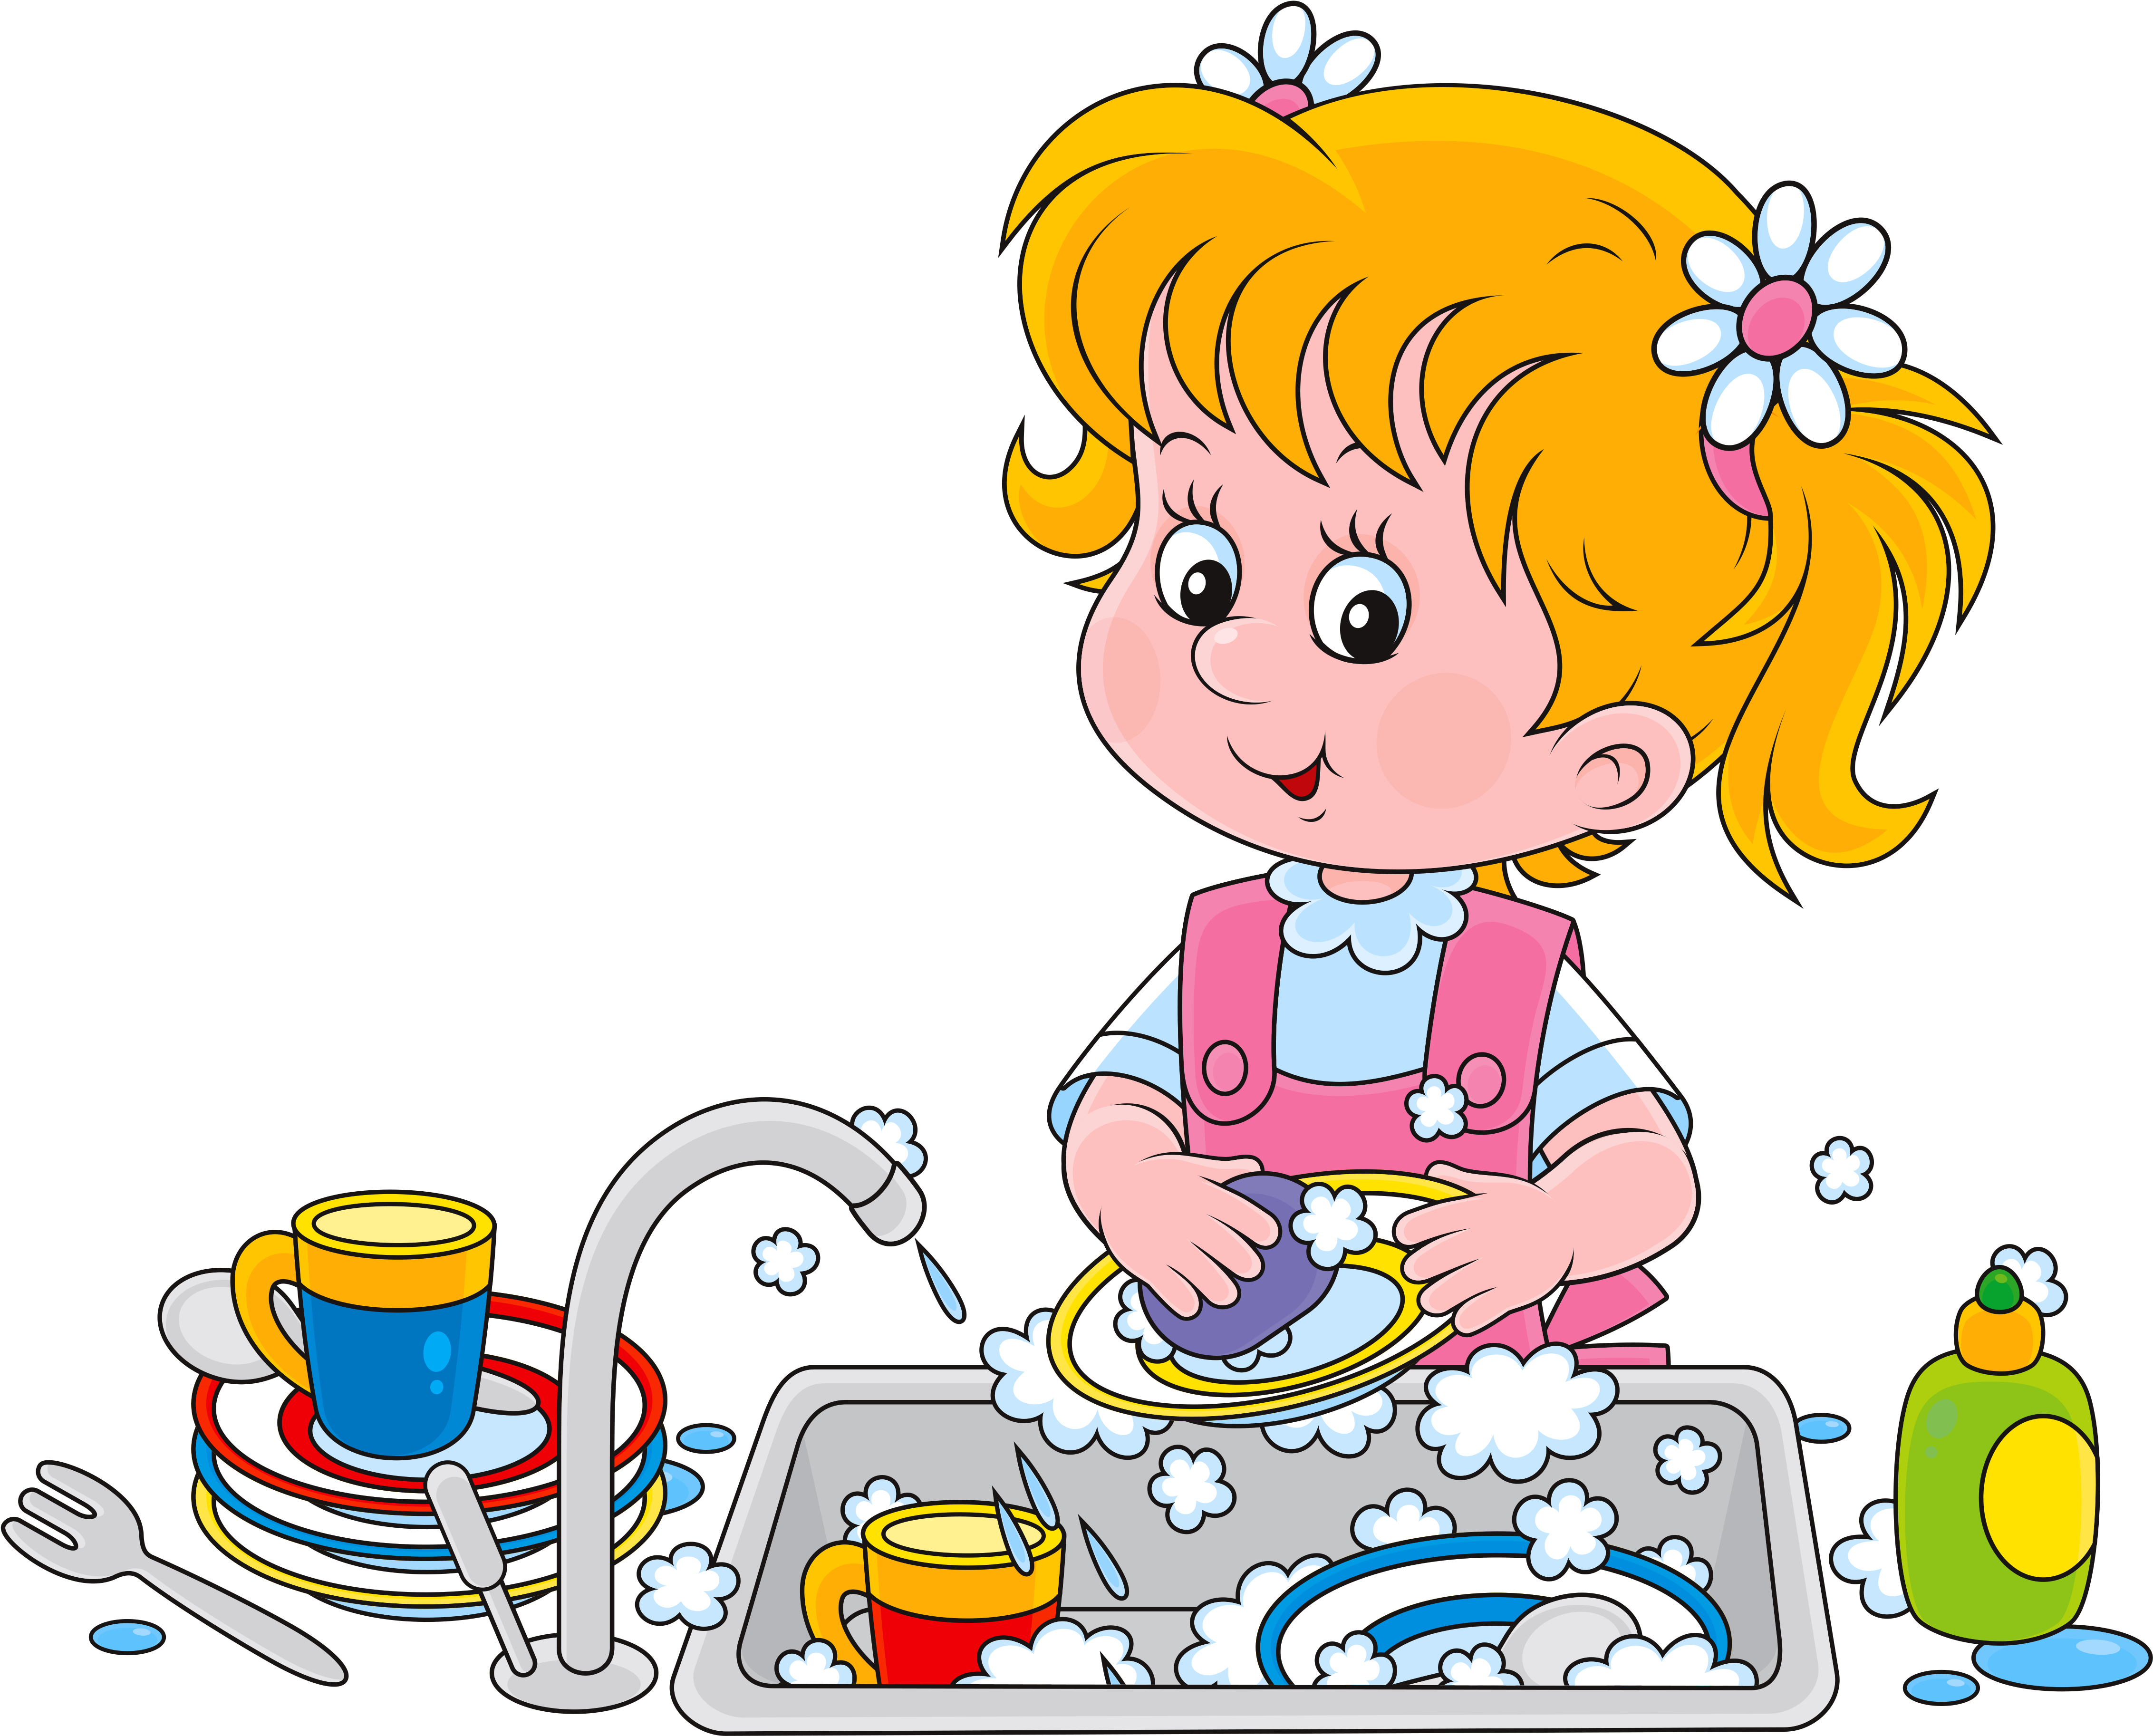 Песня моем посуду. Дети мамины помощники. Мытье посуды для детей. Девочка моет посуду. Мытье посуды иллюстрации для детей.